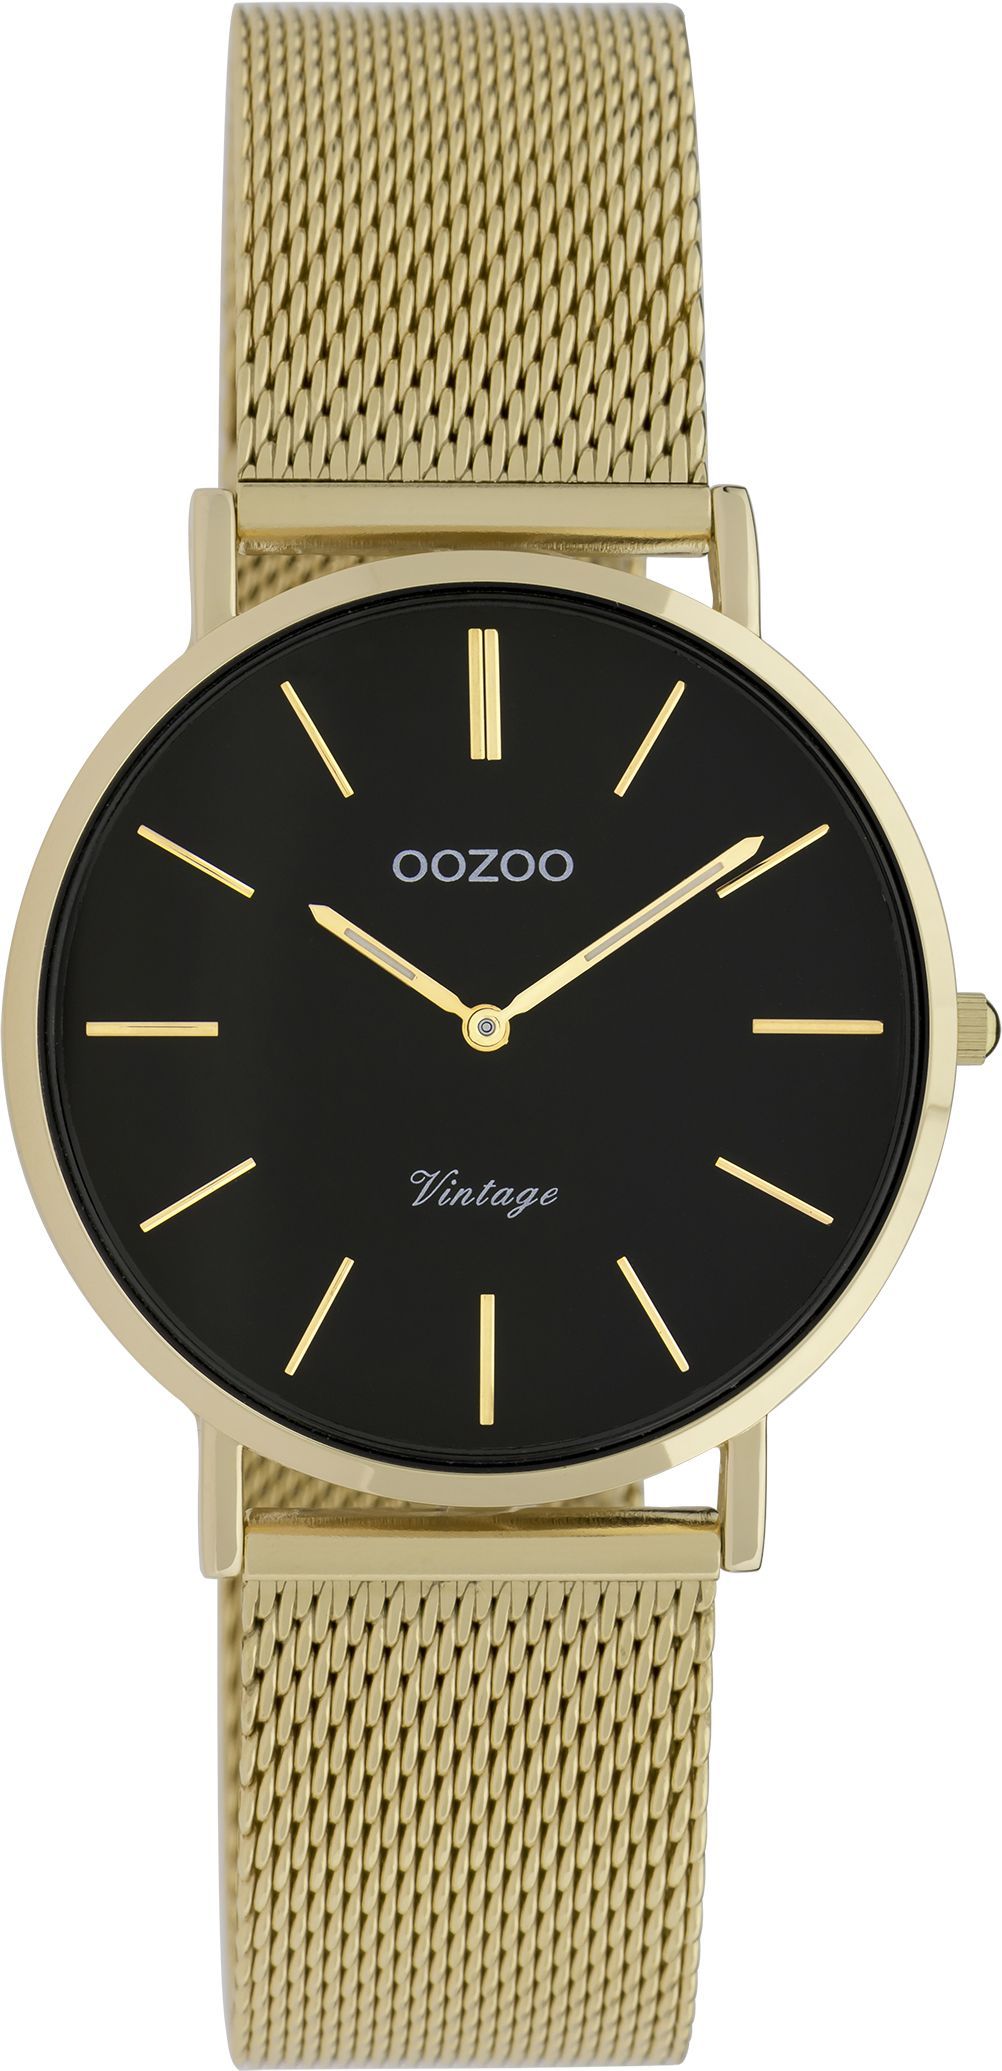 OOZOO Vintage C9915